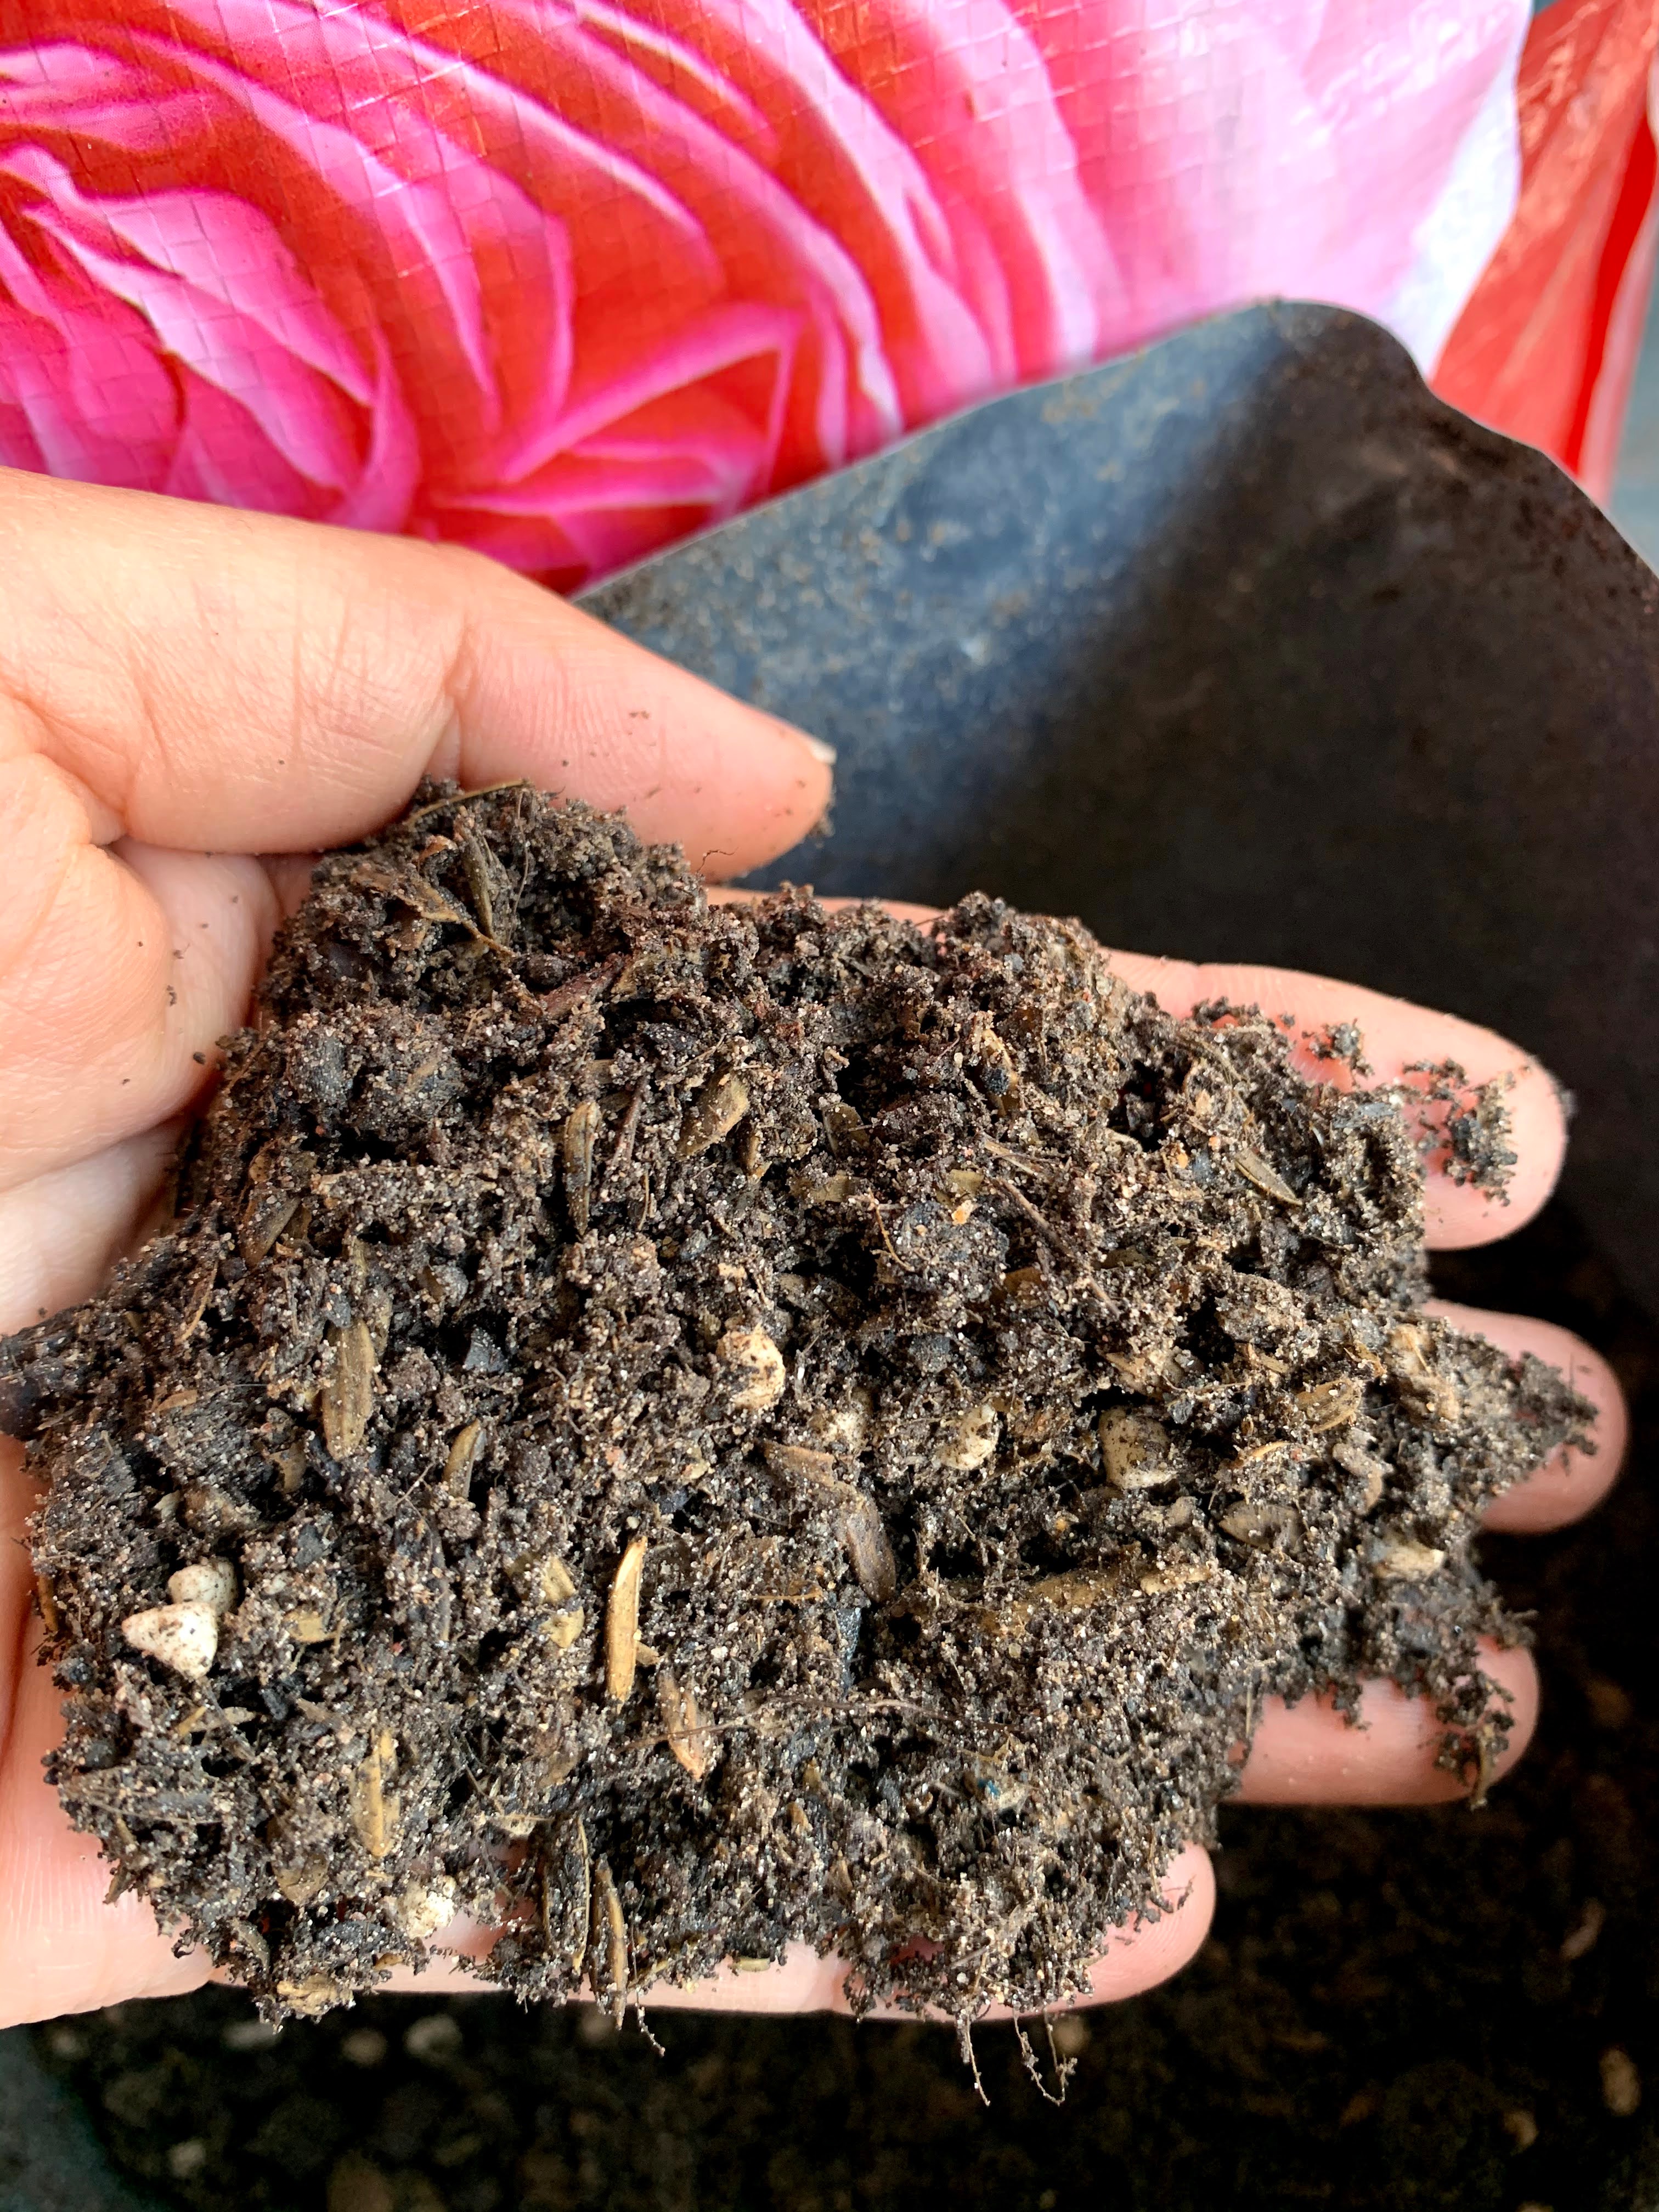 Đất trộn sẵn chuyên trồng kiểng lá Monstera, anthurium,melano, pertusam...gói 6,5dm3 nặng ~1,8-2,2kg/gói